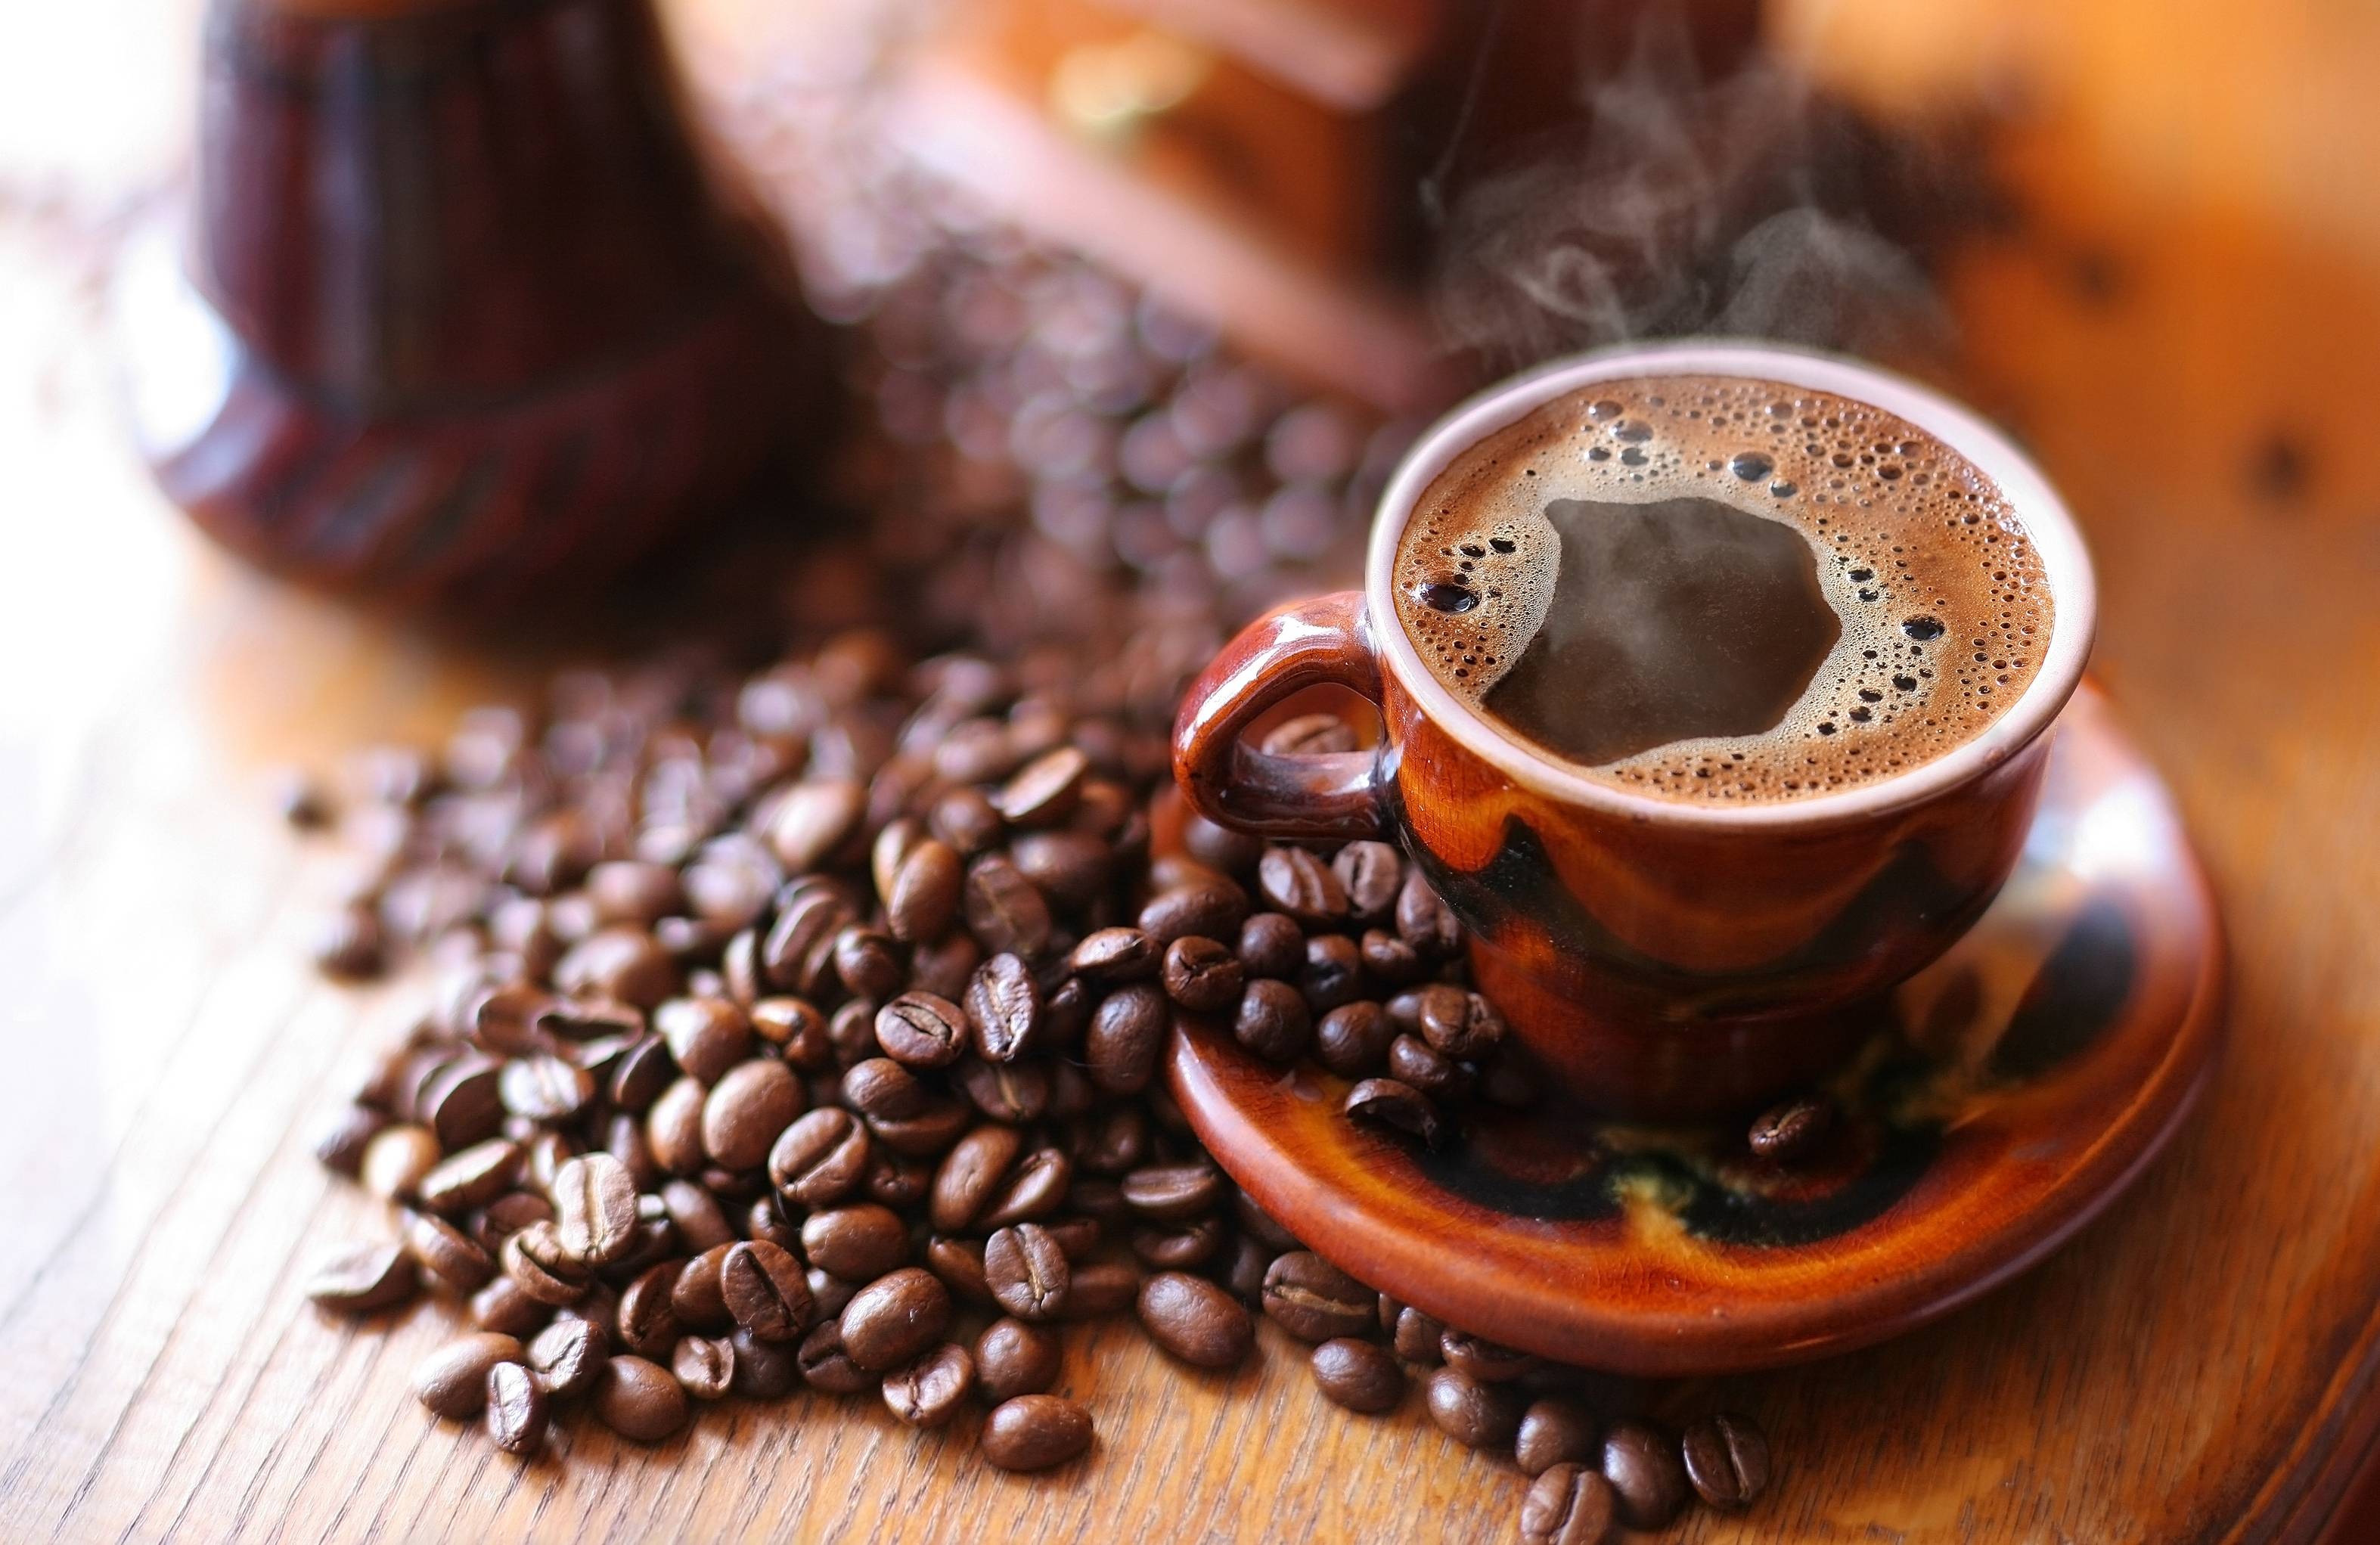 Чем можно заменить кофе для бодрости по утрам: 7 советов — женский сайт краснодара women93.ru, новости, афиша, мероприятия